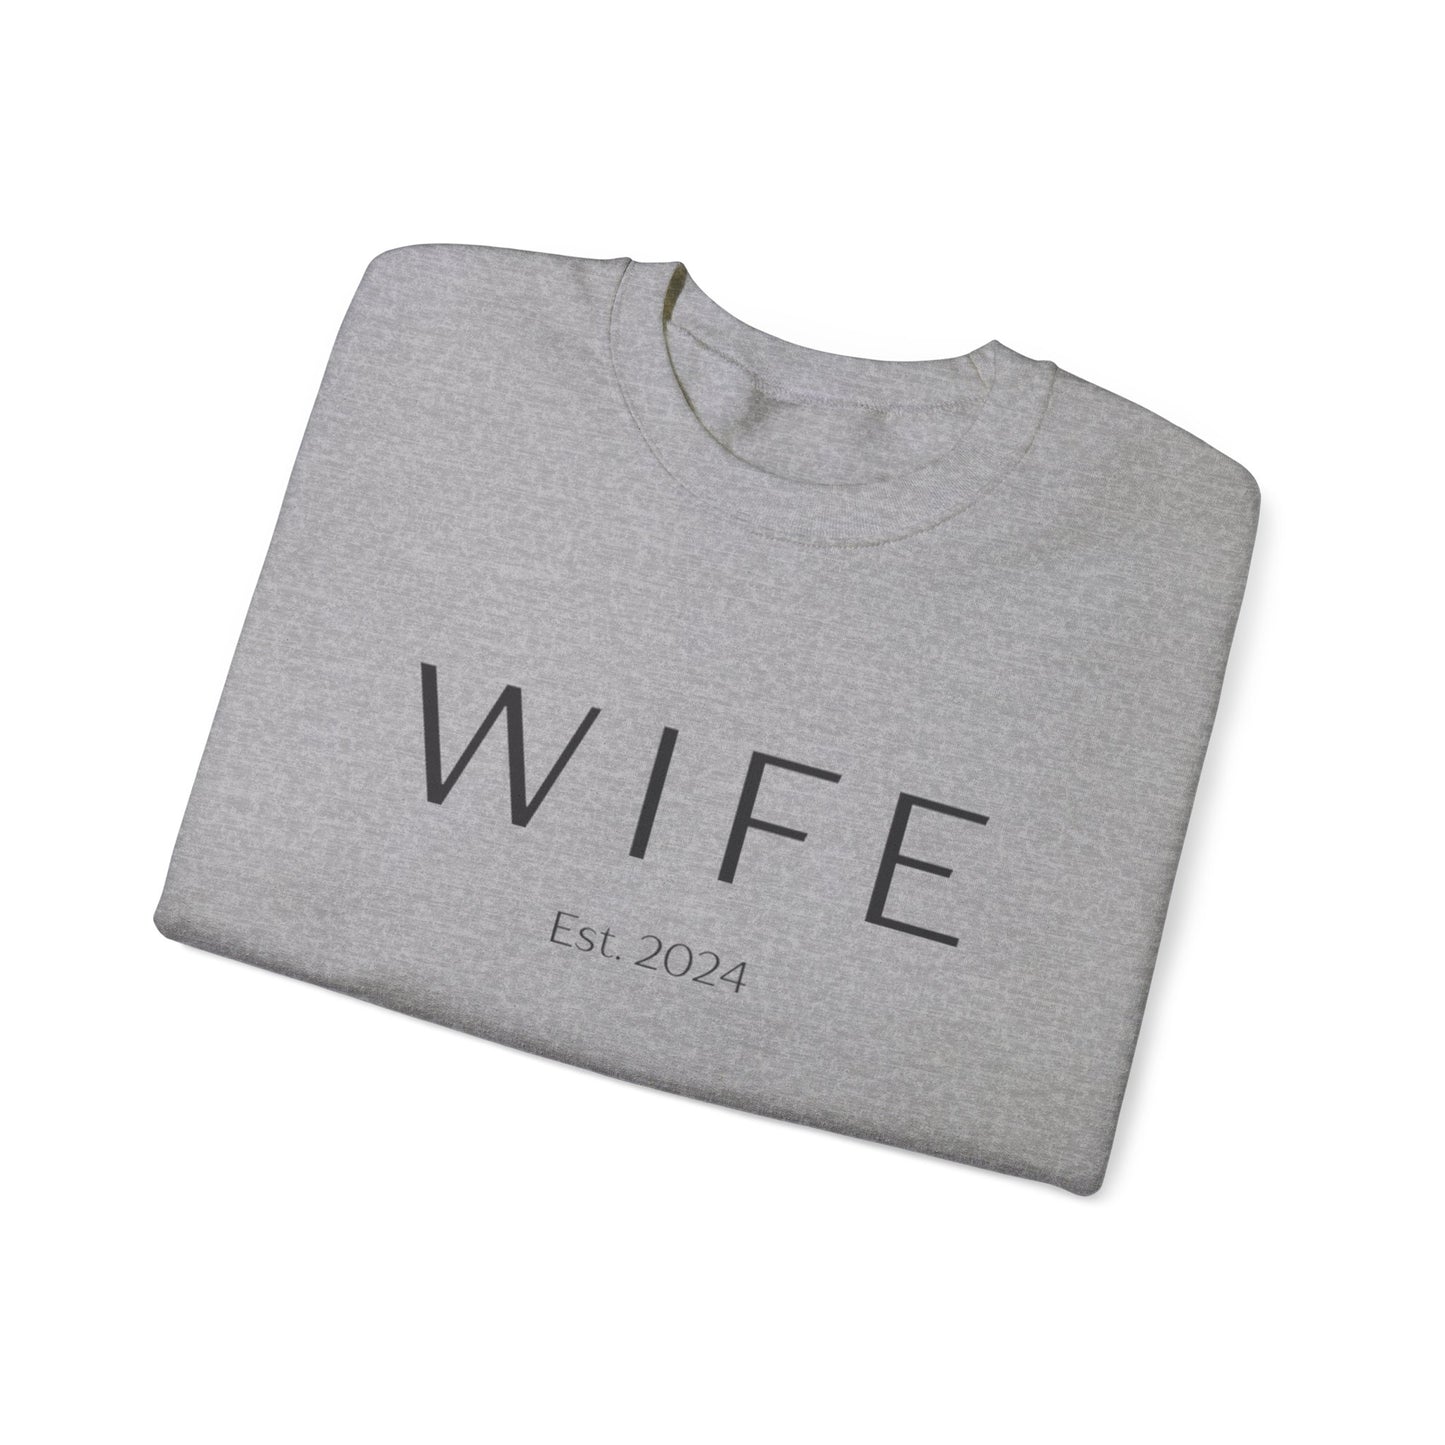 WIFE Est. 2024 Crewneck Sweatshirt